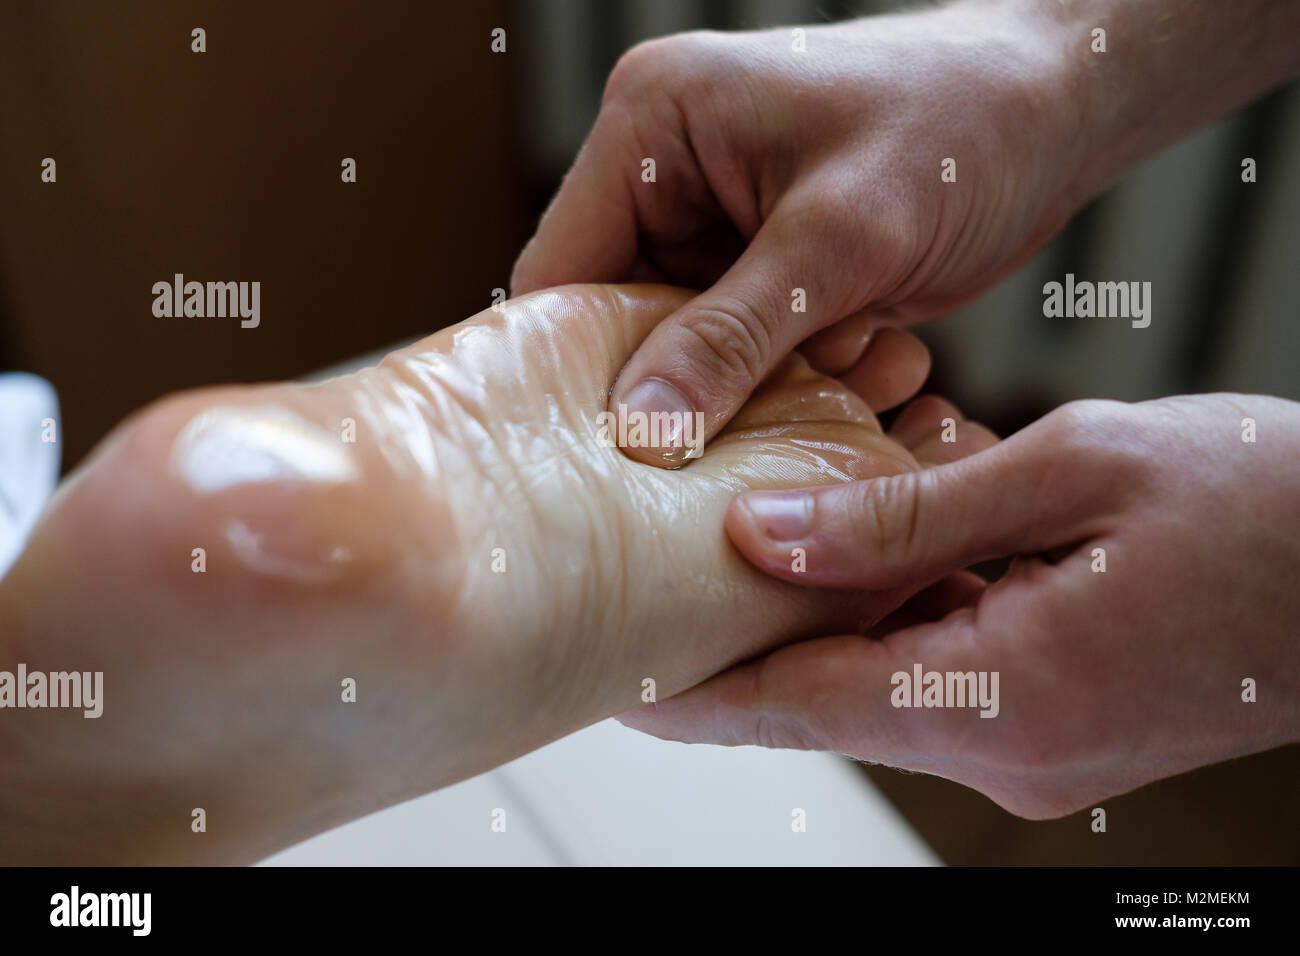 Close up of female pied pour se massage par masseur professionnel masculin. Soins du corps, soins de la peau, bien-être, bien-être, santé, beauté concept de traitement. Banque D'Images